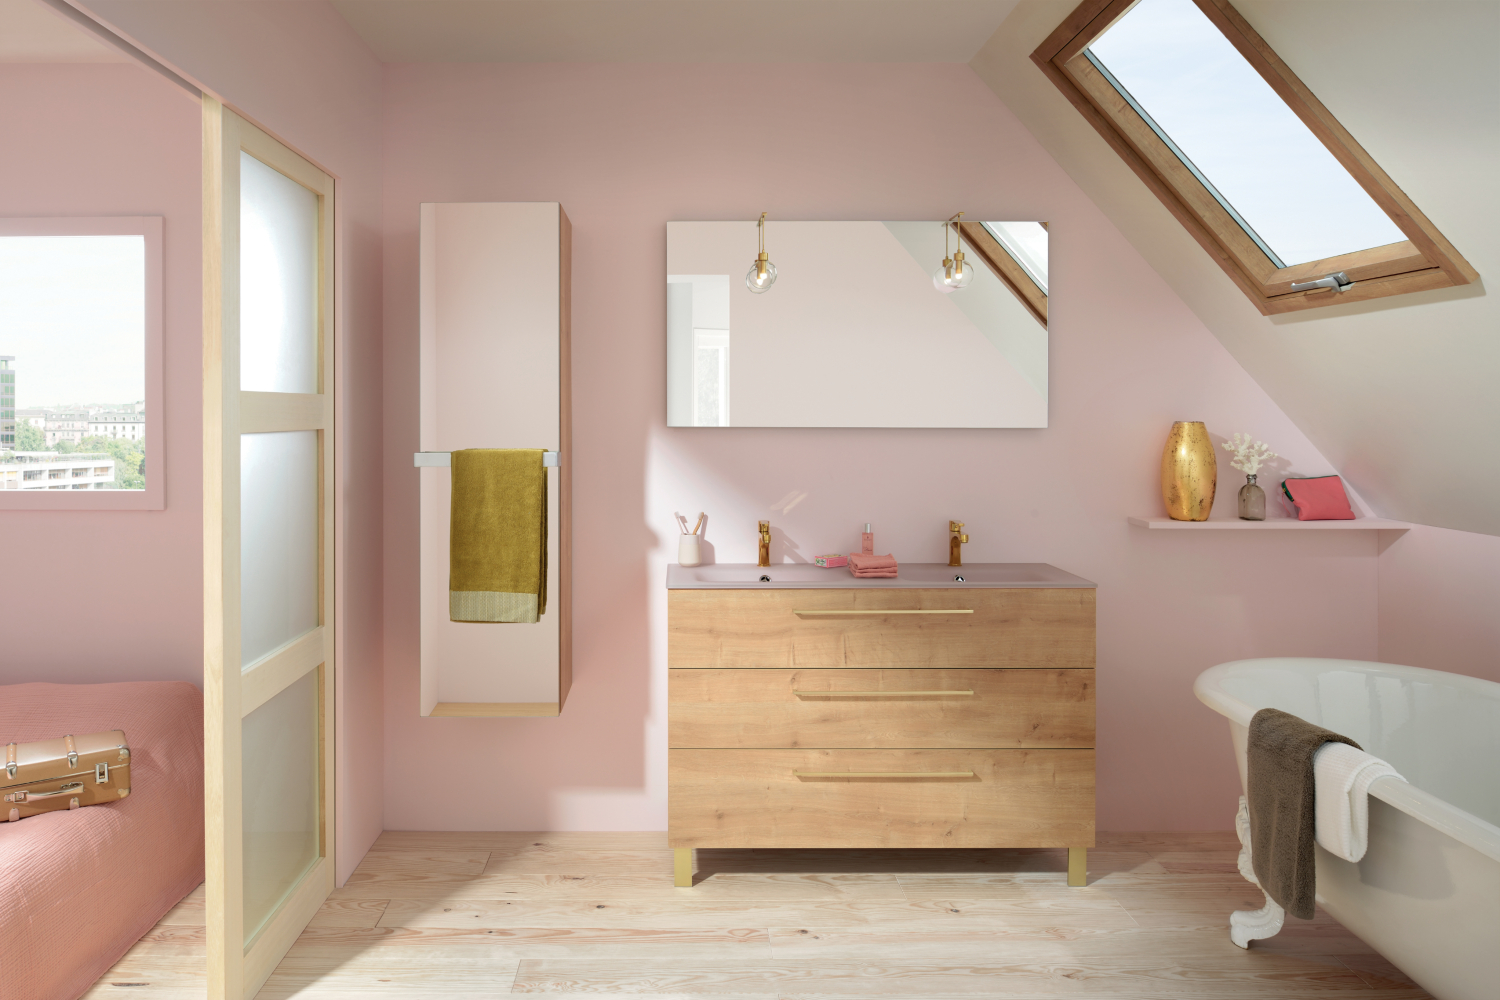 Conseils pour aménager une petite salle de bain // Hellø Blogzine blog deco & lifestyle www.hello-hello.fr